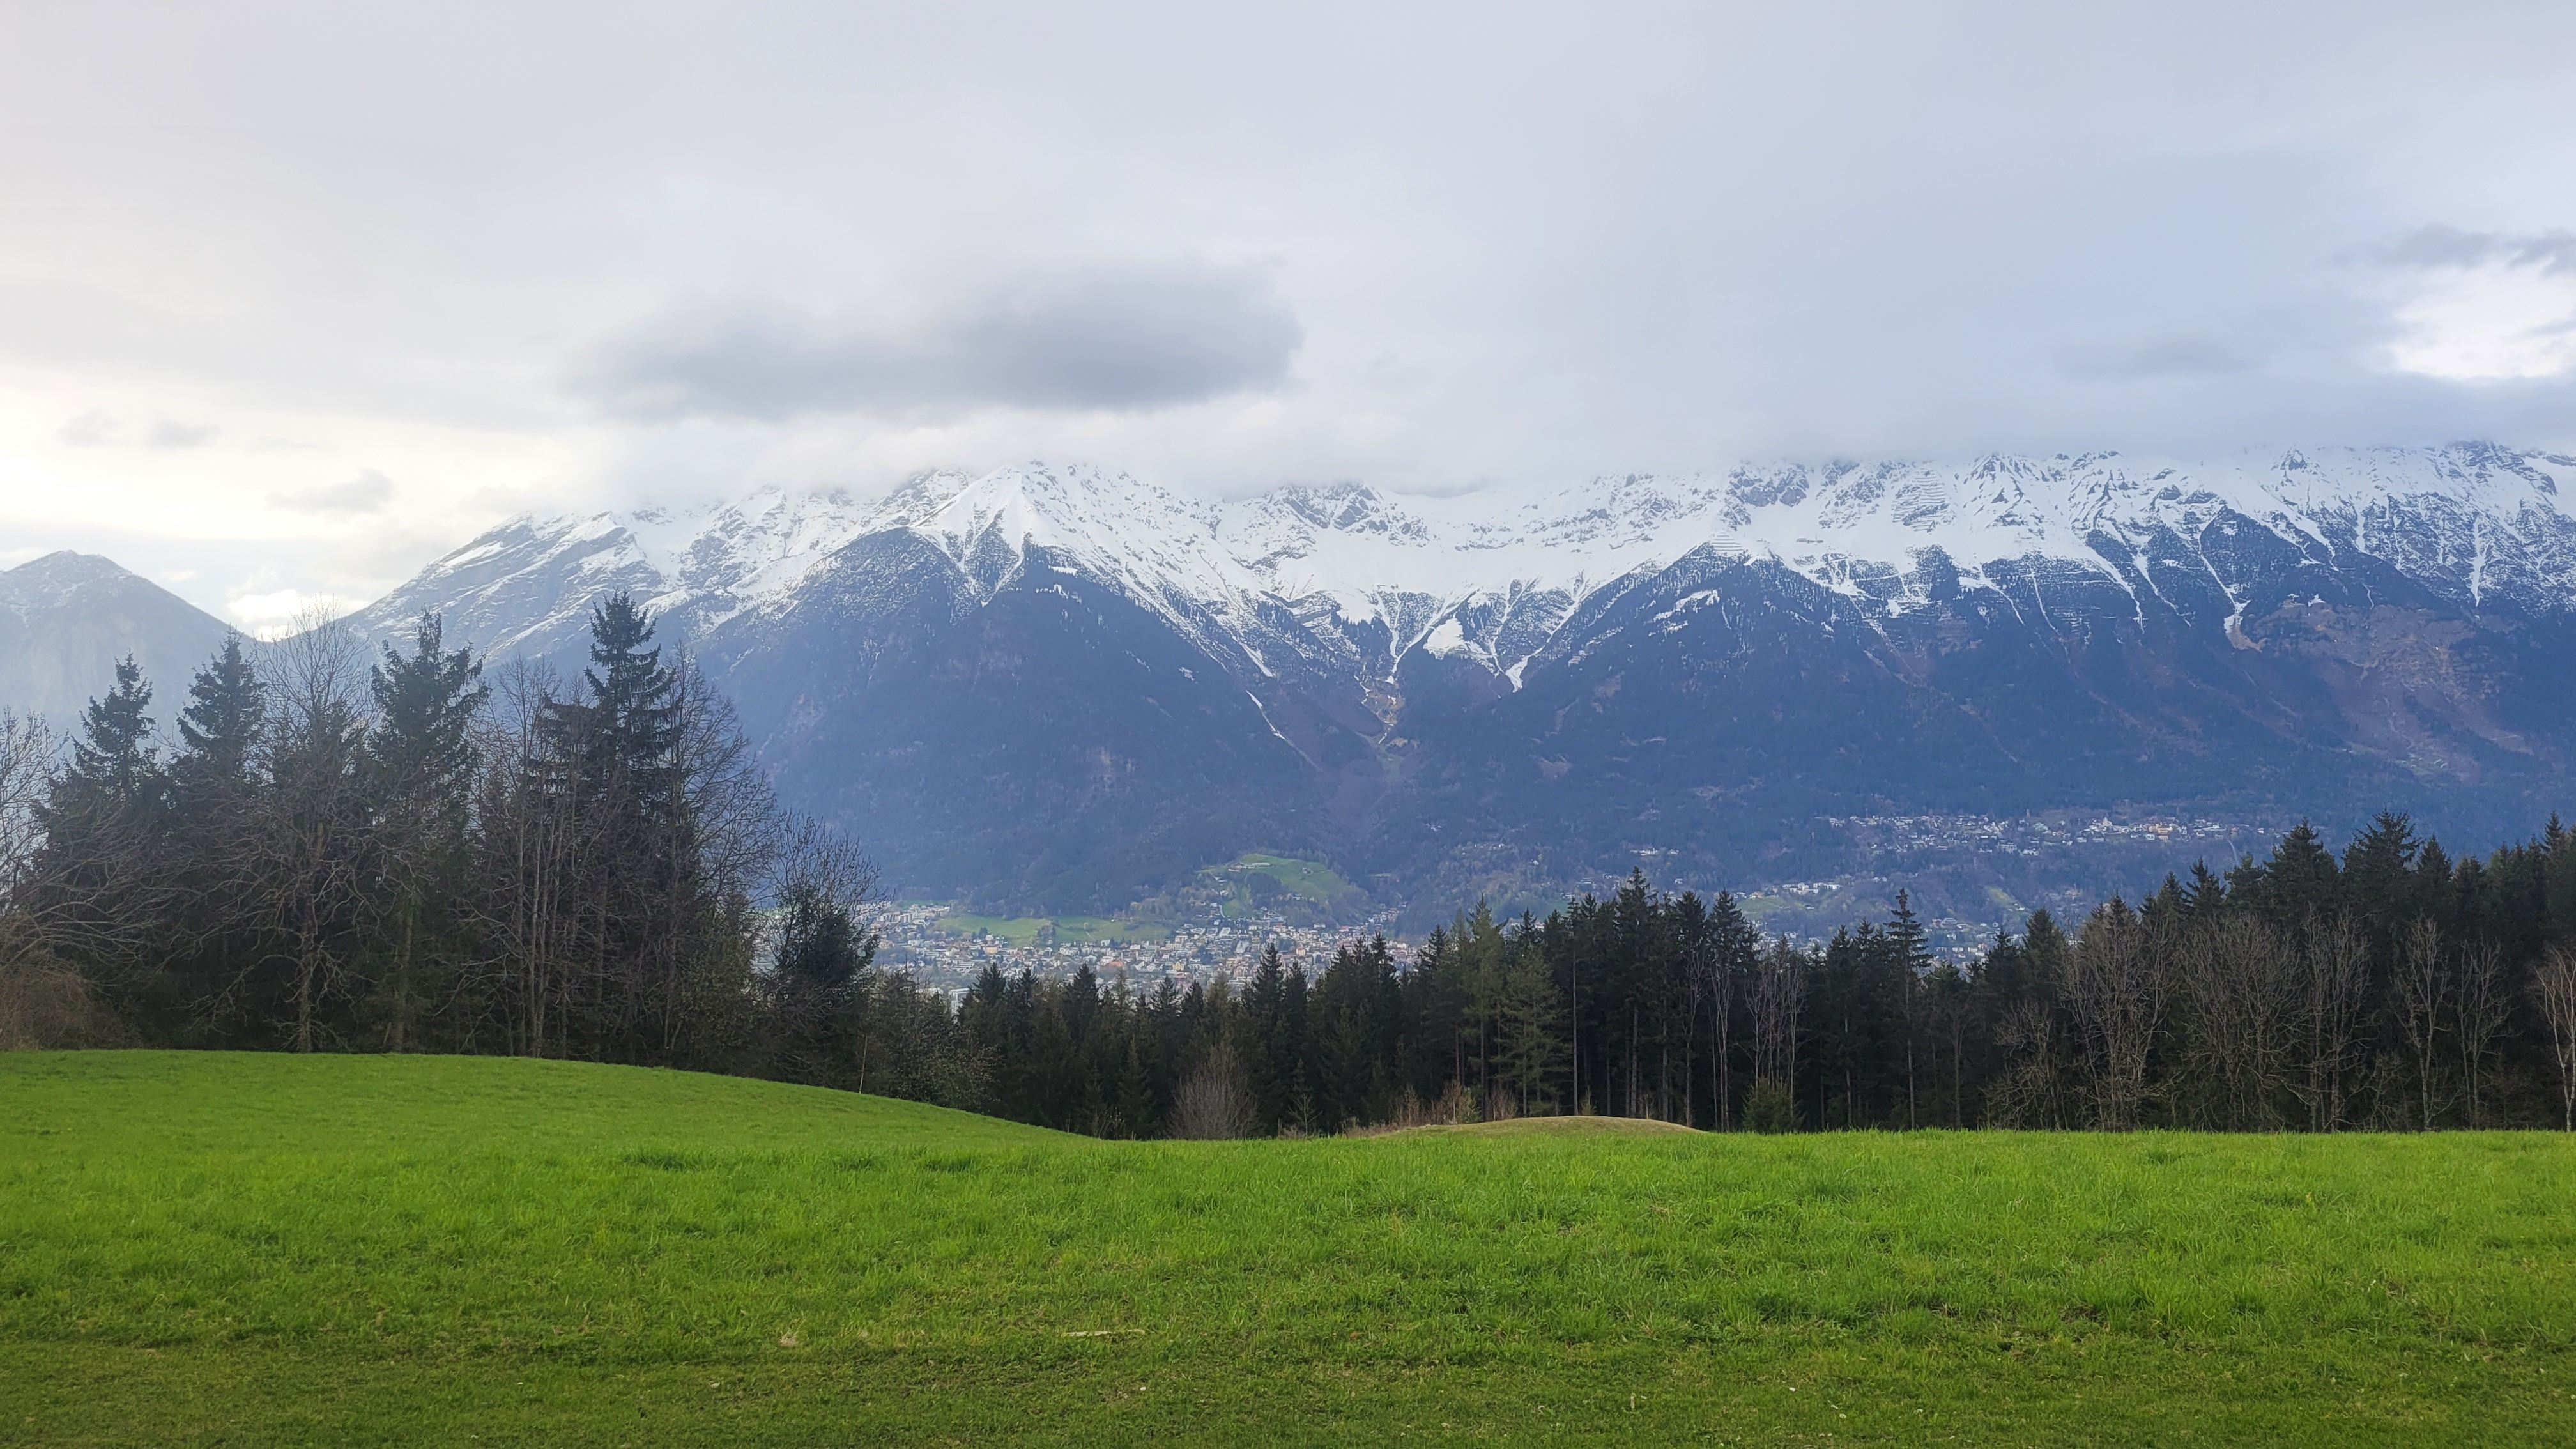 © Wenzl; Blick auf die Berge